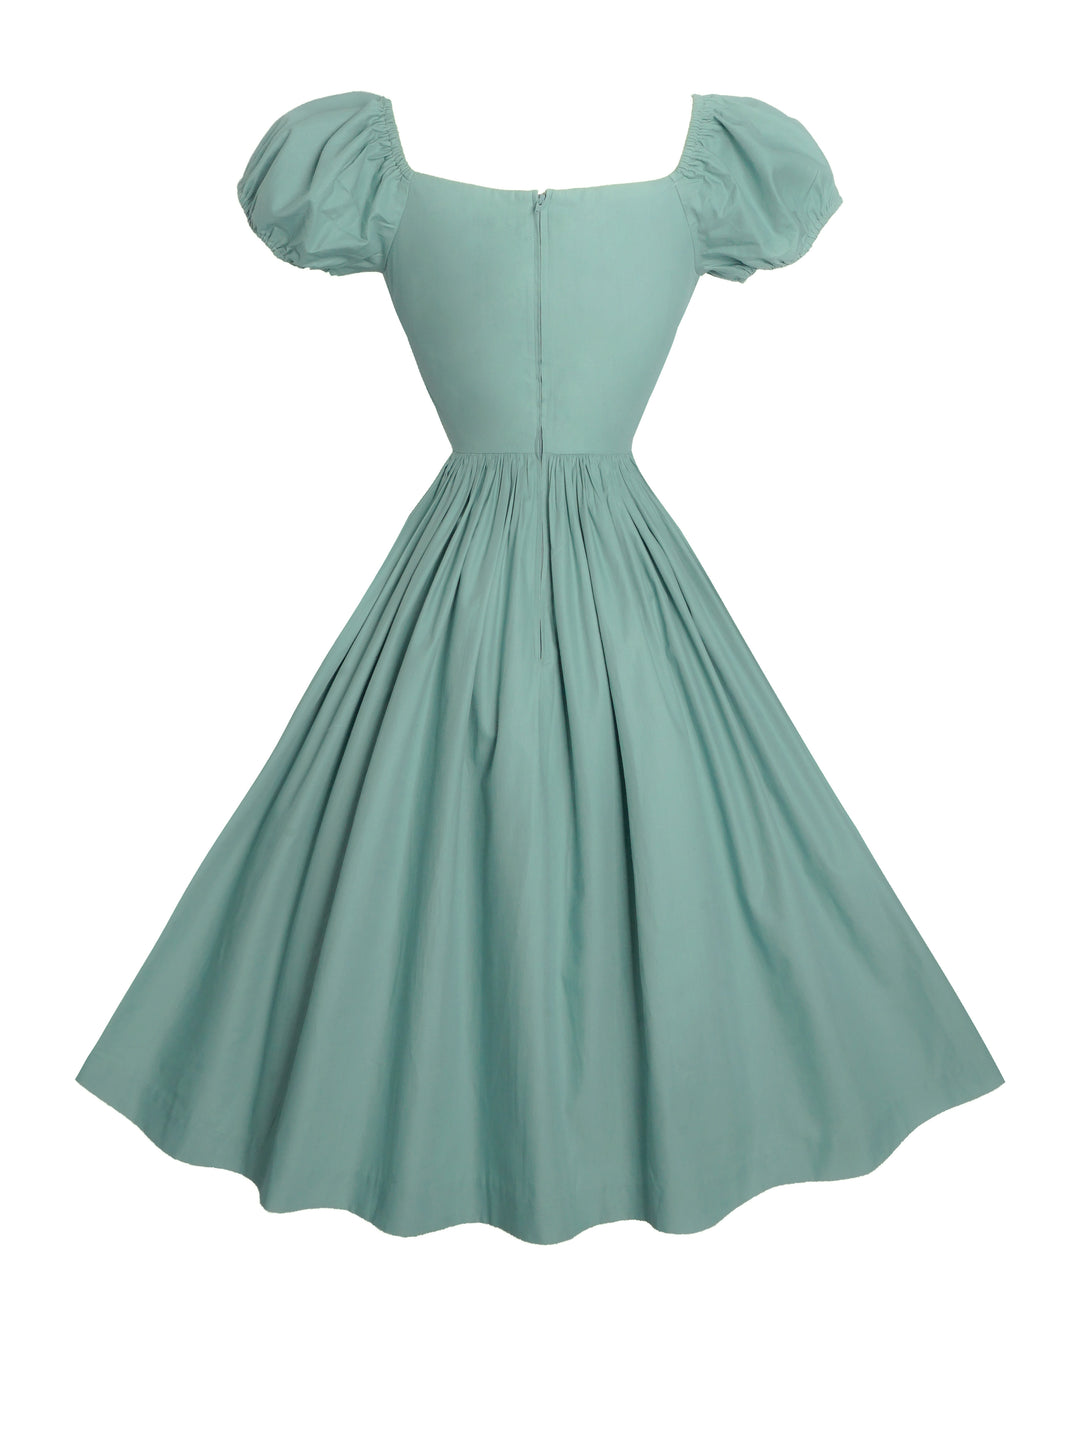 RTS - Loretta Dress in Jade Green Cotton